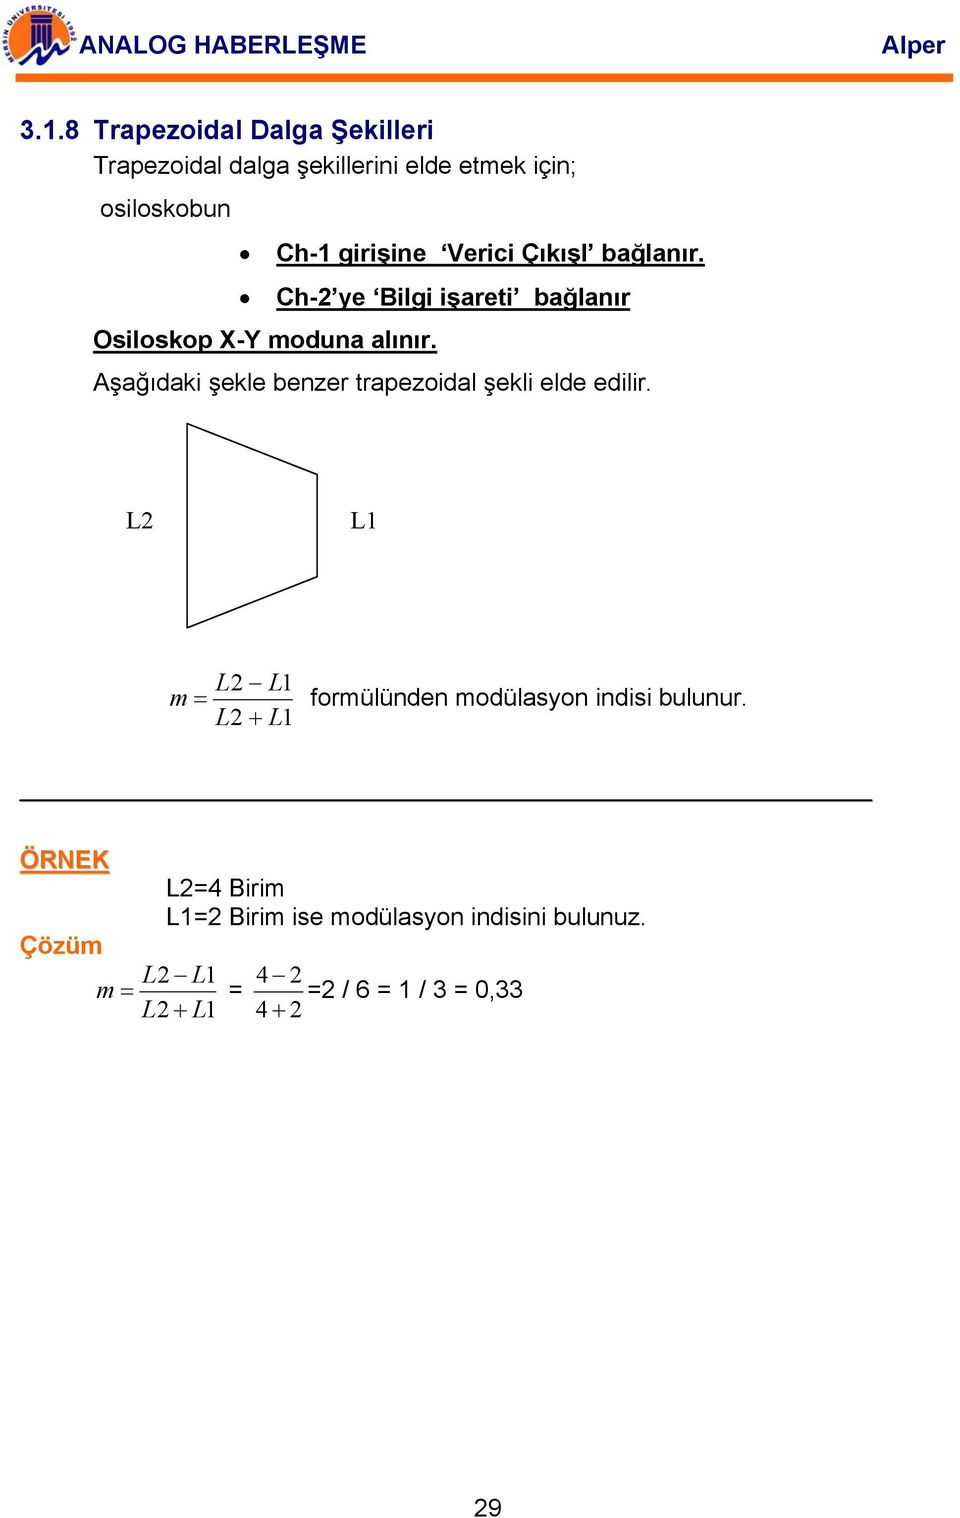 Aşağıdaki şekle benzer trapezoidal şekli elde edilir.